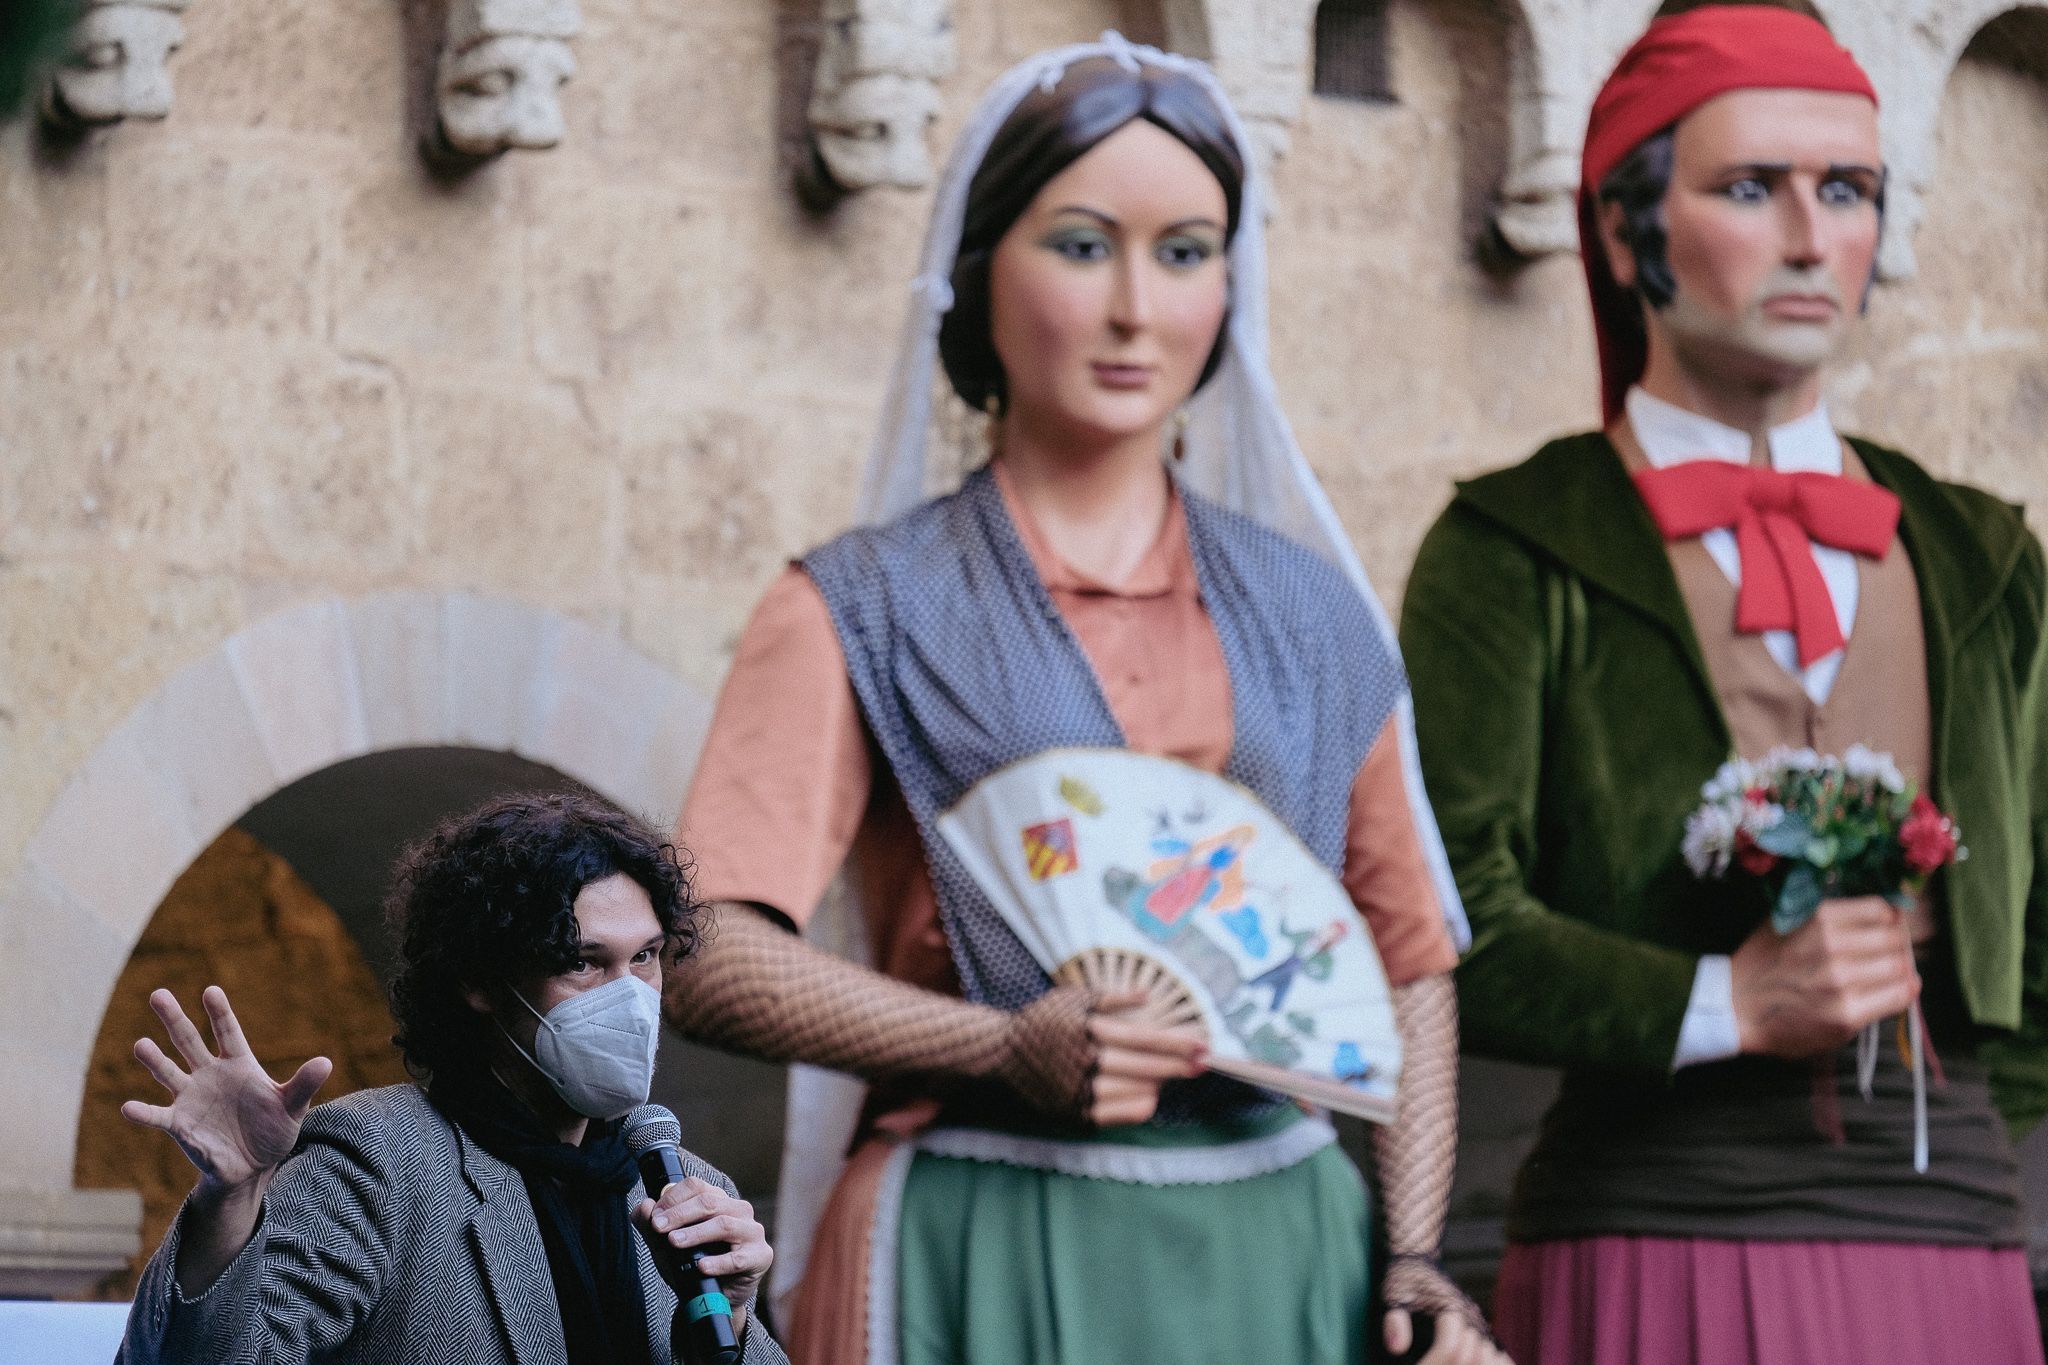 Presentació de les figures infantils dels Geganters de Sant Cugat al Claustre. FOTO: Ale Gómez